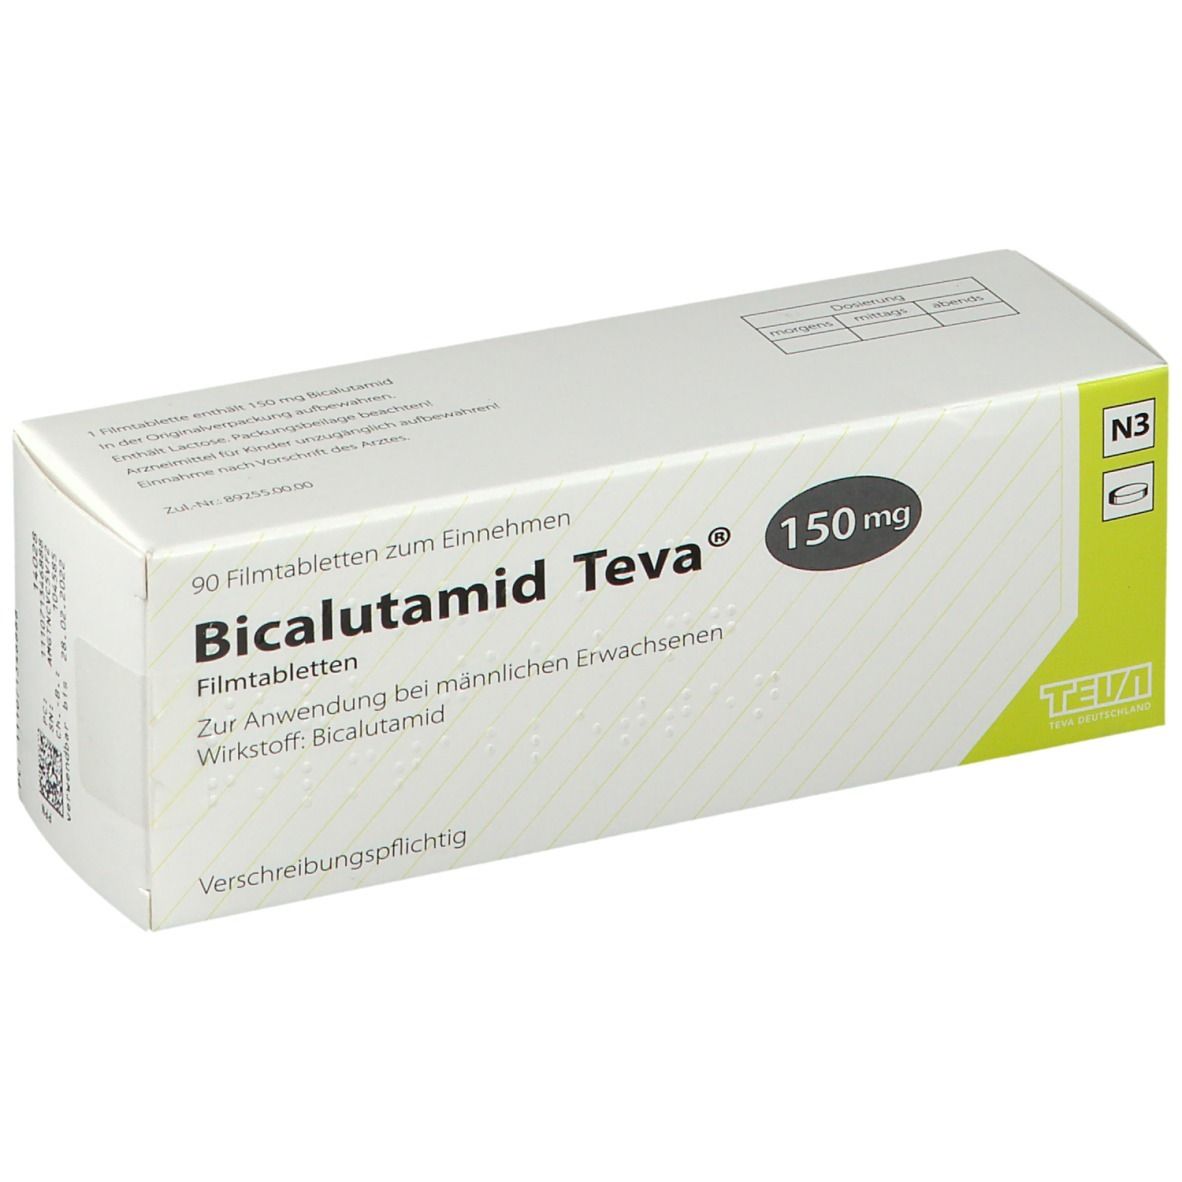 Bicalutamid Teva 150 mg